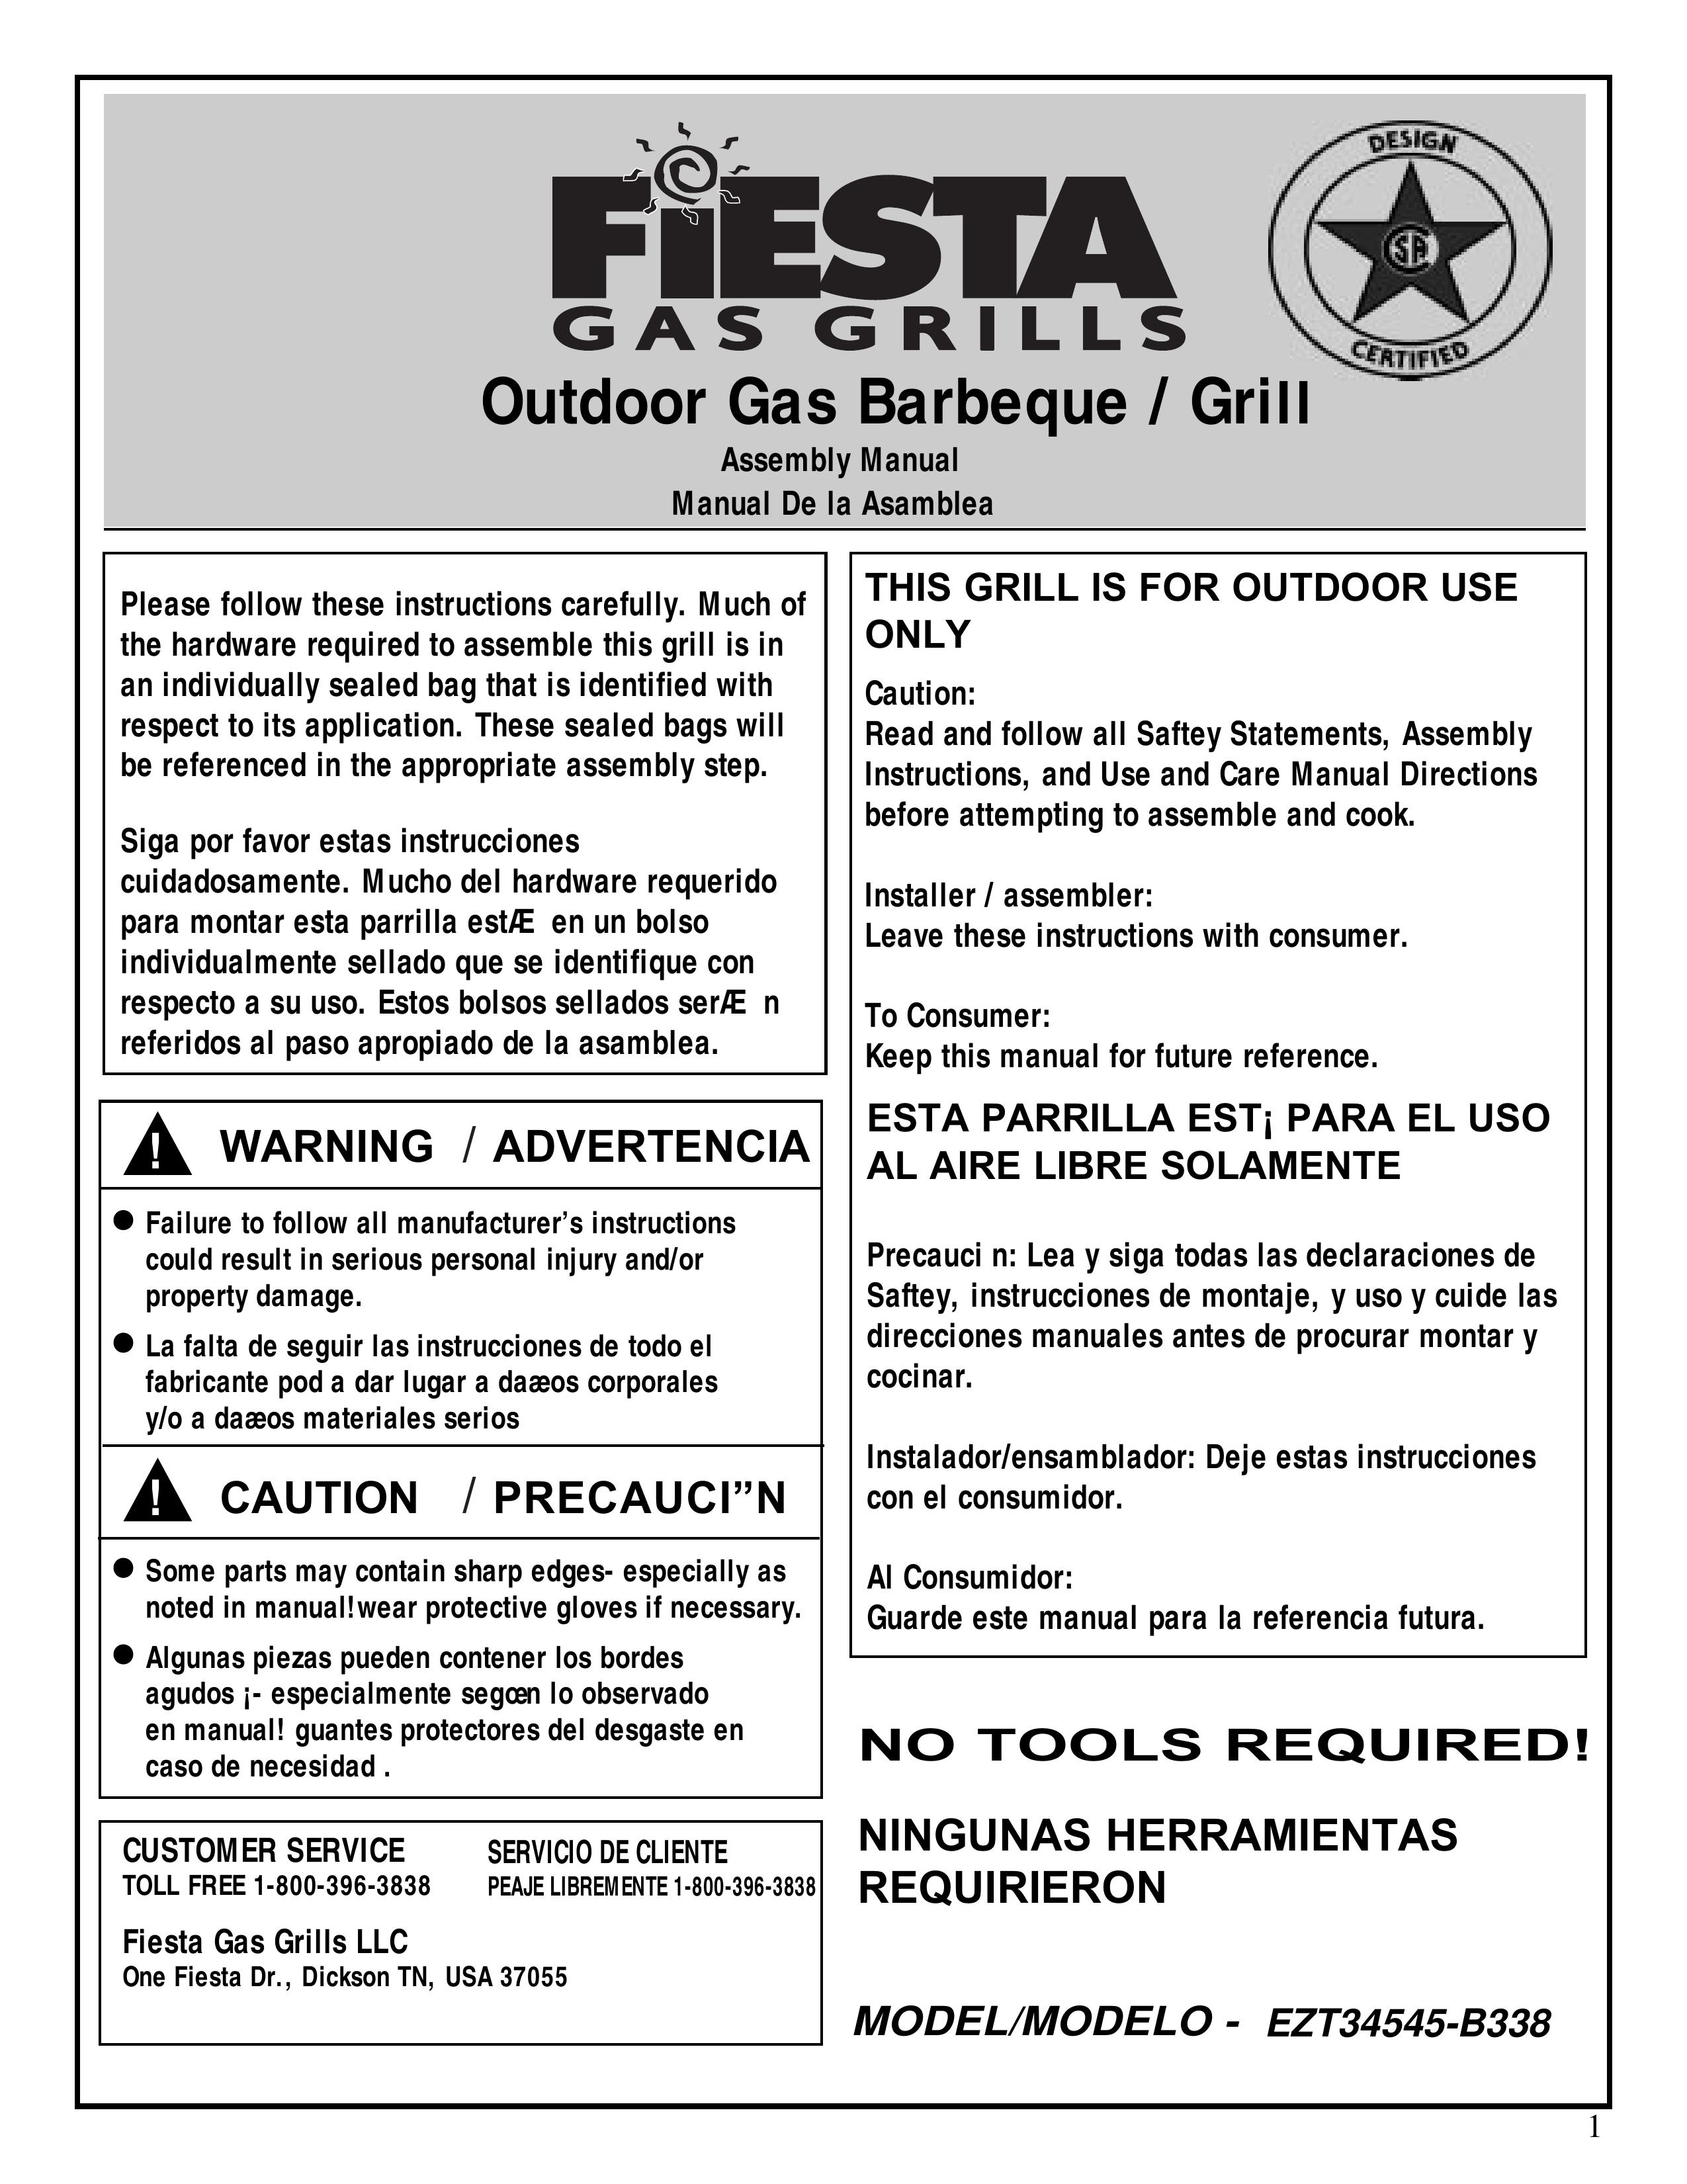 Fiesta EZT34545-B338 Gas Grill User Manual